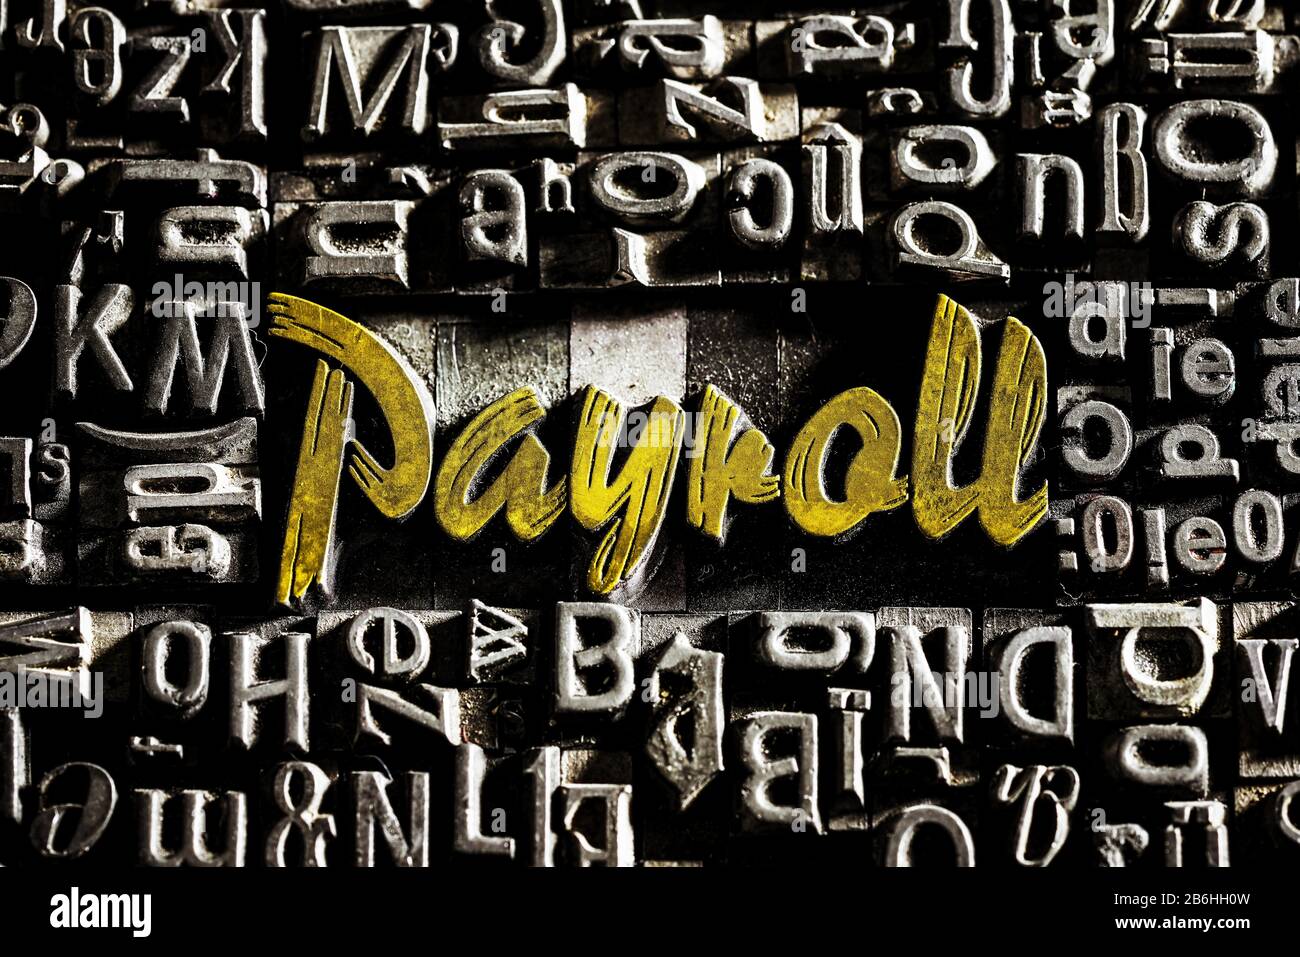 Les anciennes lettres de plomb avec écriture dorée montrent le mot Payroll, Allemagne Banque D'Images